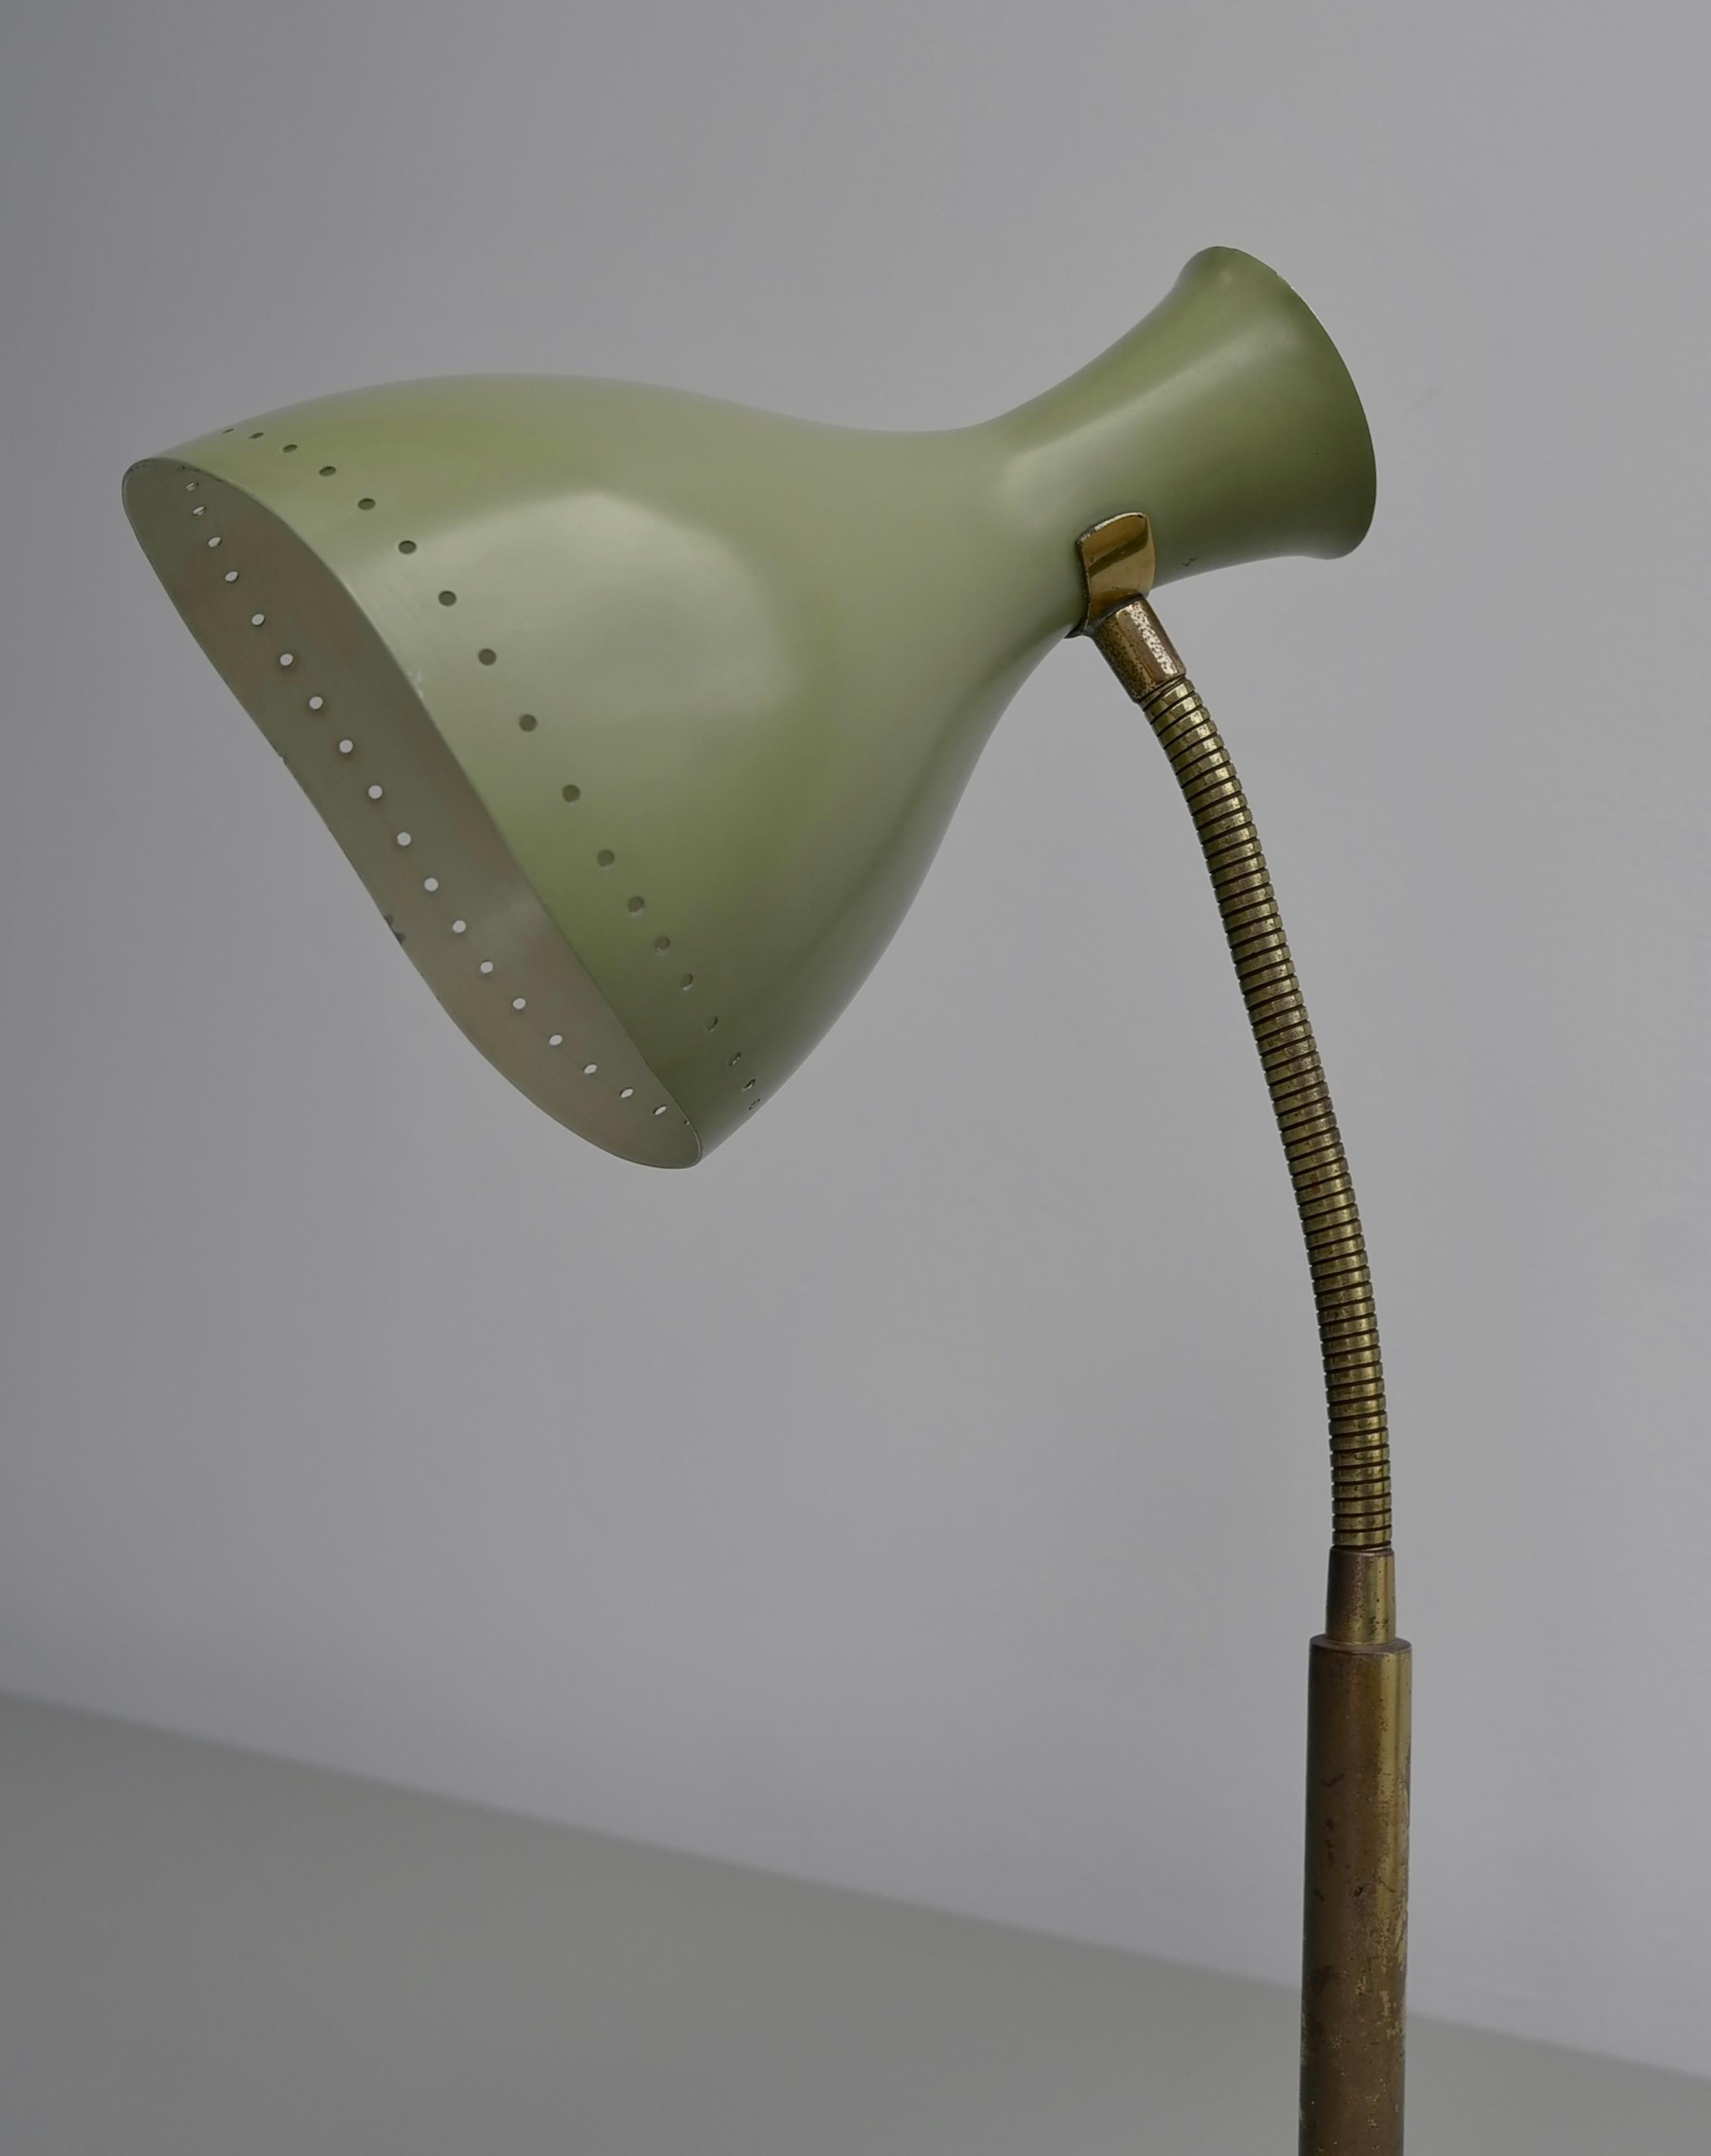 Lampe de table vert olive avec détails en laiton, Italie, années 1950

Pièce très bien réalisée avec des détails fins. Très probablement fabriqué par Stilnovo ou Stilux.